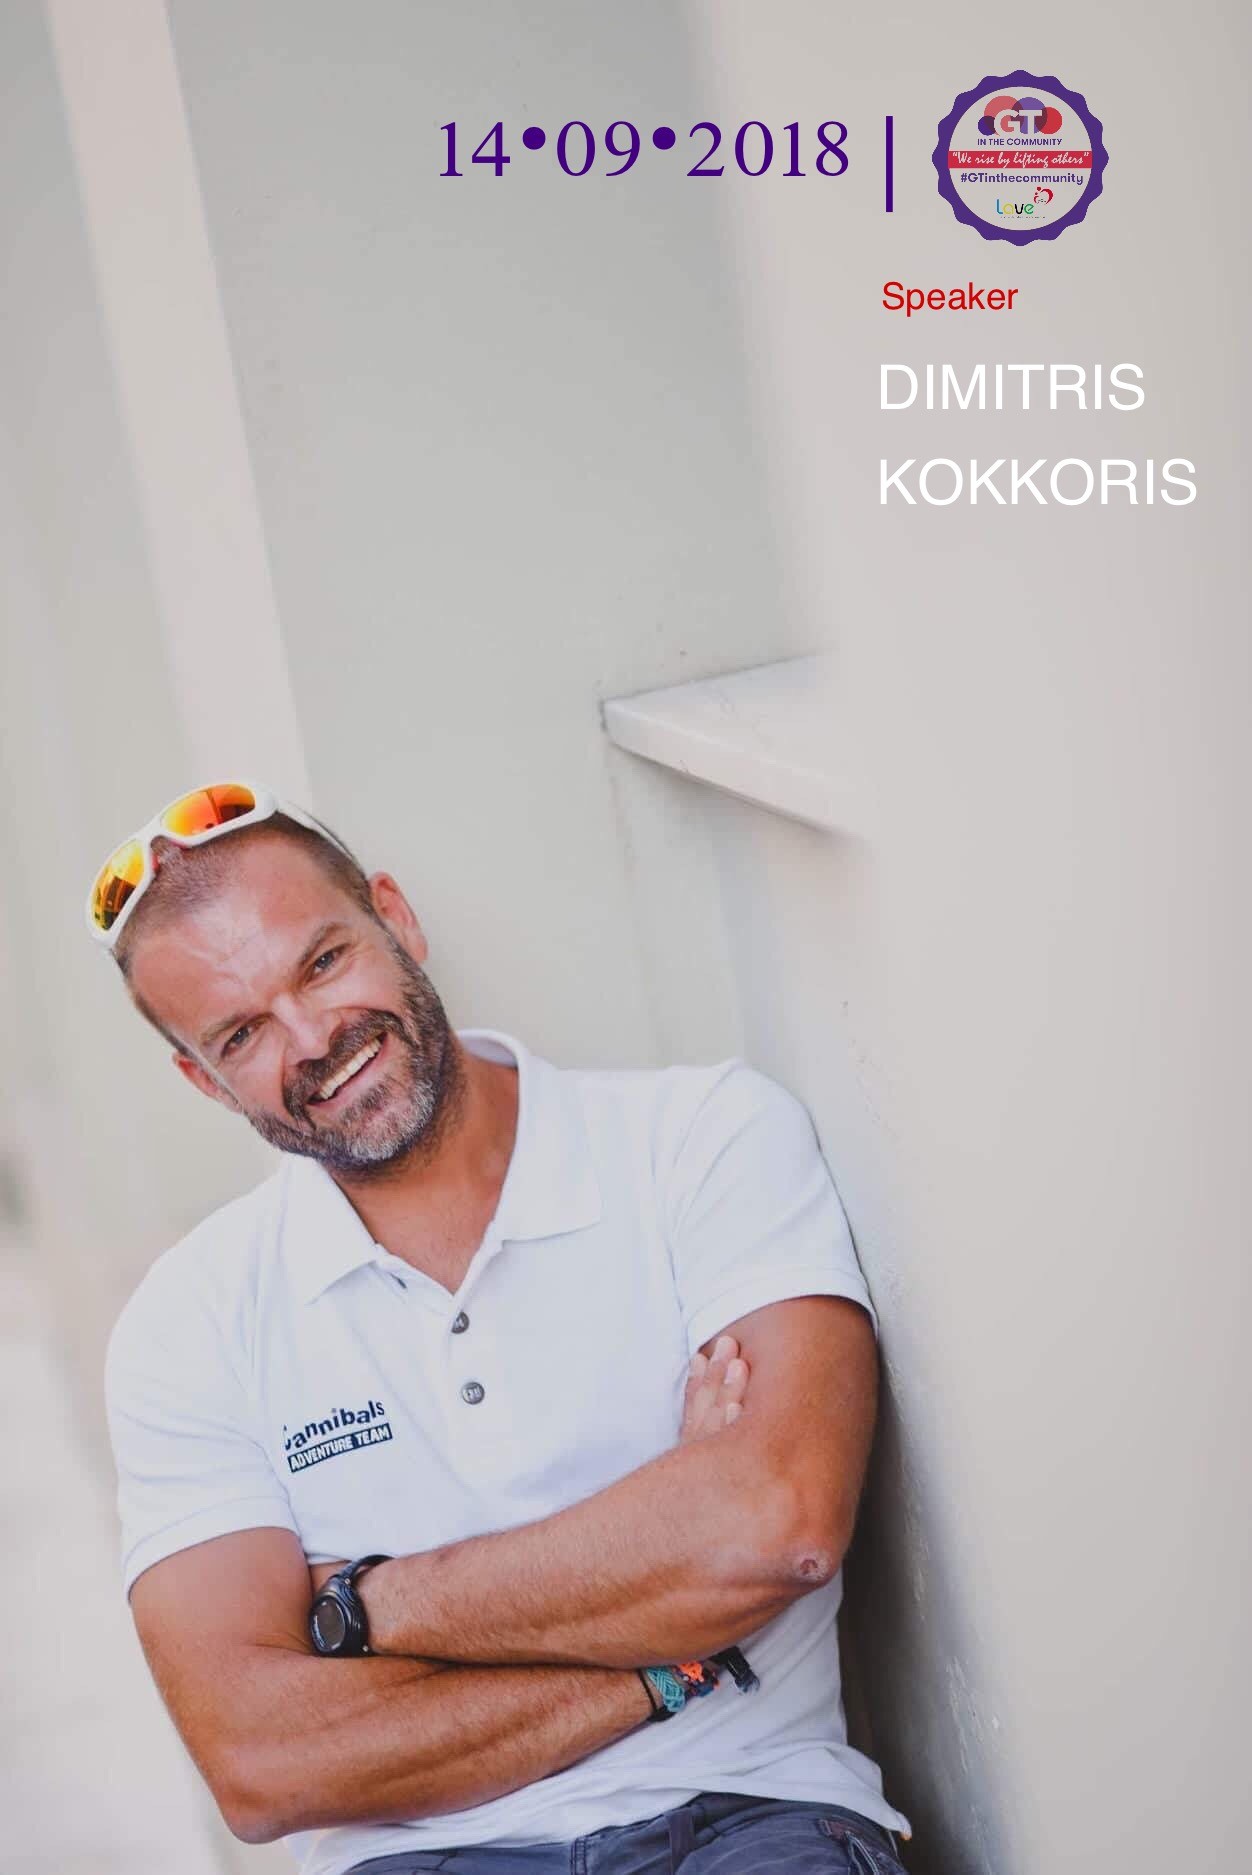 Dimitris Kokkoris